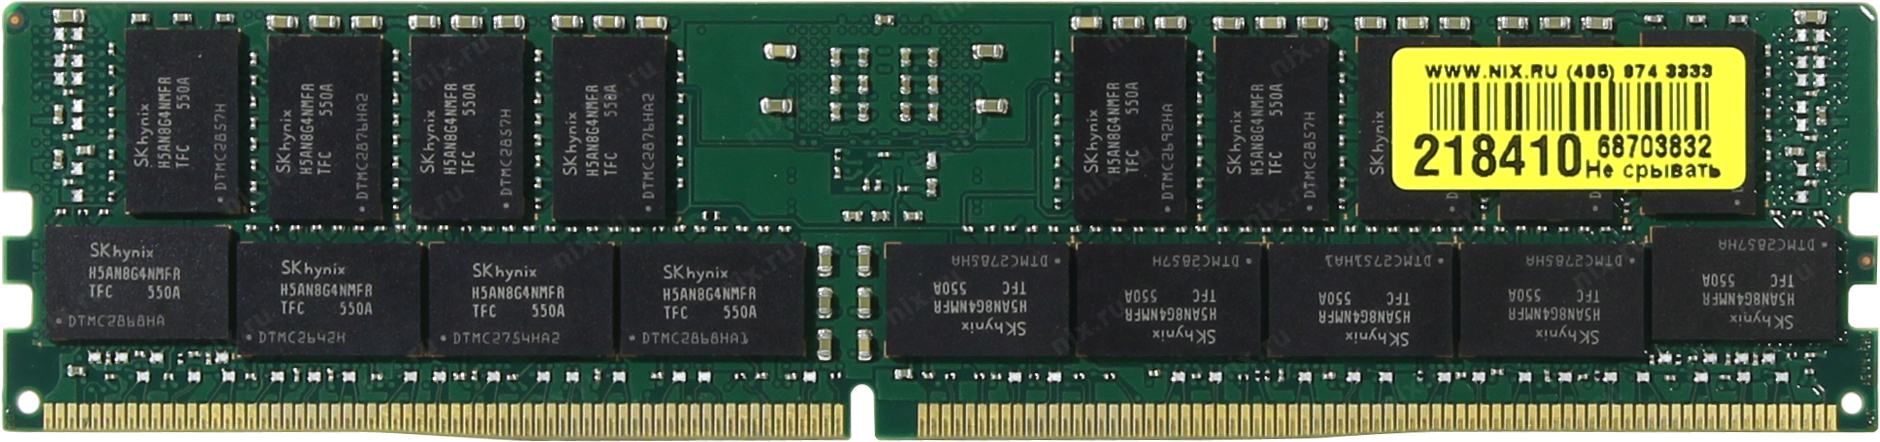 Dimm ddr4 32 гб. Оперативная память 32 ГБ 1 шт. Hynix ddr3 1600 registered ECC DIMM 32gb. Оперативная память 4 ГБ 1 шт. Hynix ddr4 2133 registered ECC DIMM 4gb. Оперативная память 32 ГБ 1 шт. Hynix ddr4 2400 registered ECC DIMM 32gb. DIMM 4 32t.